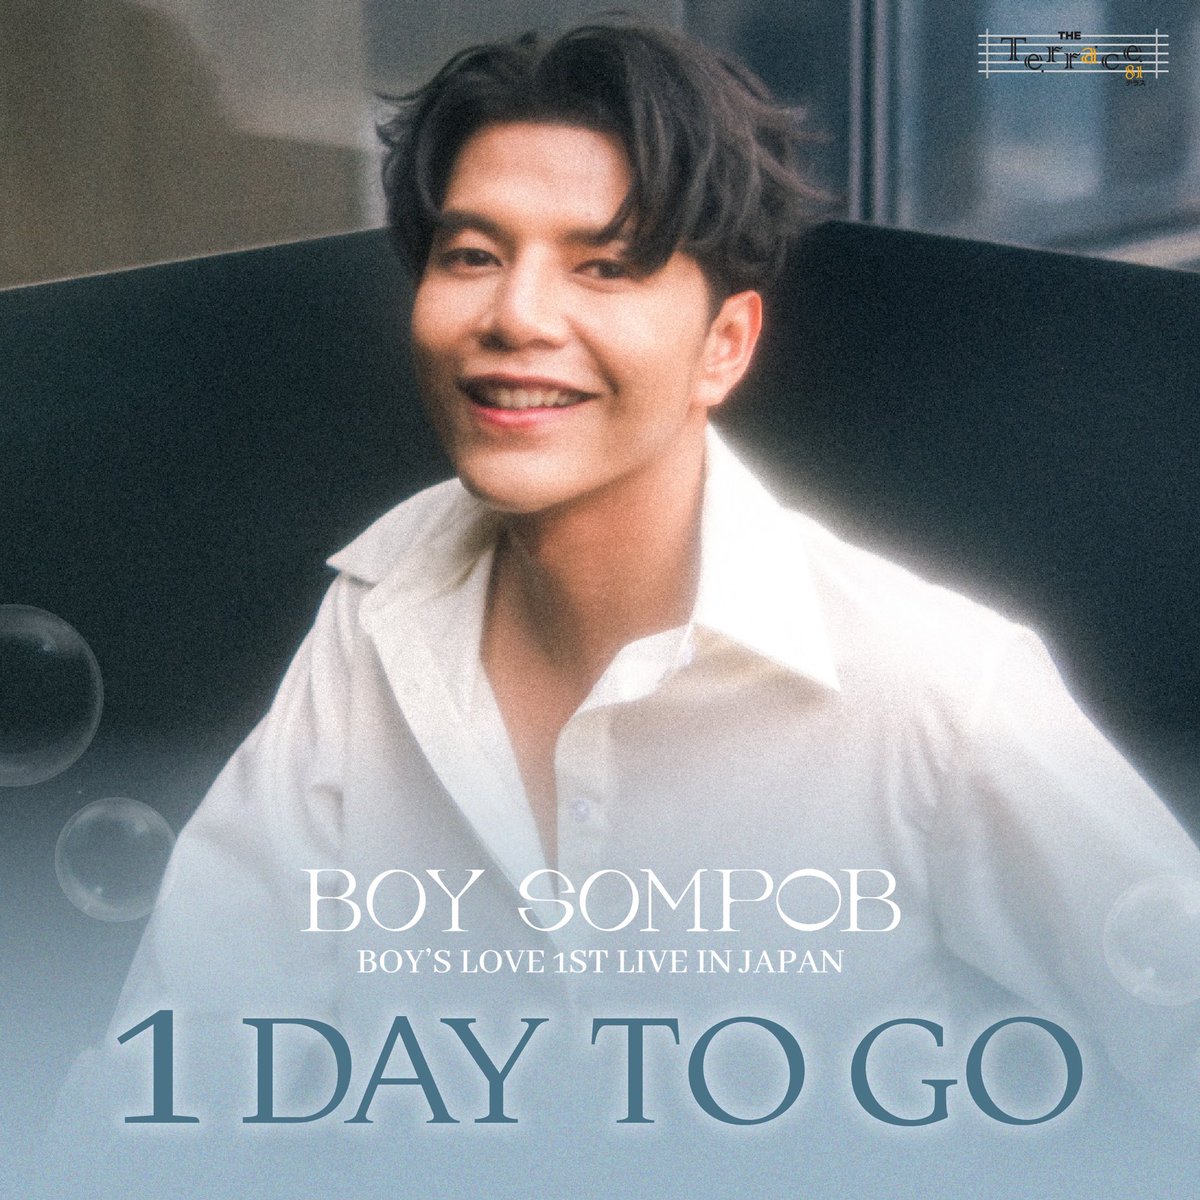 1 Days To Go!!! #TheTerrace81 #บอยสมภพ #boysompob #BoysLove1stLiveinJapan